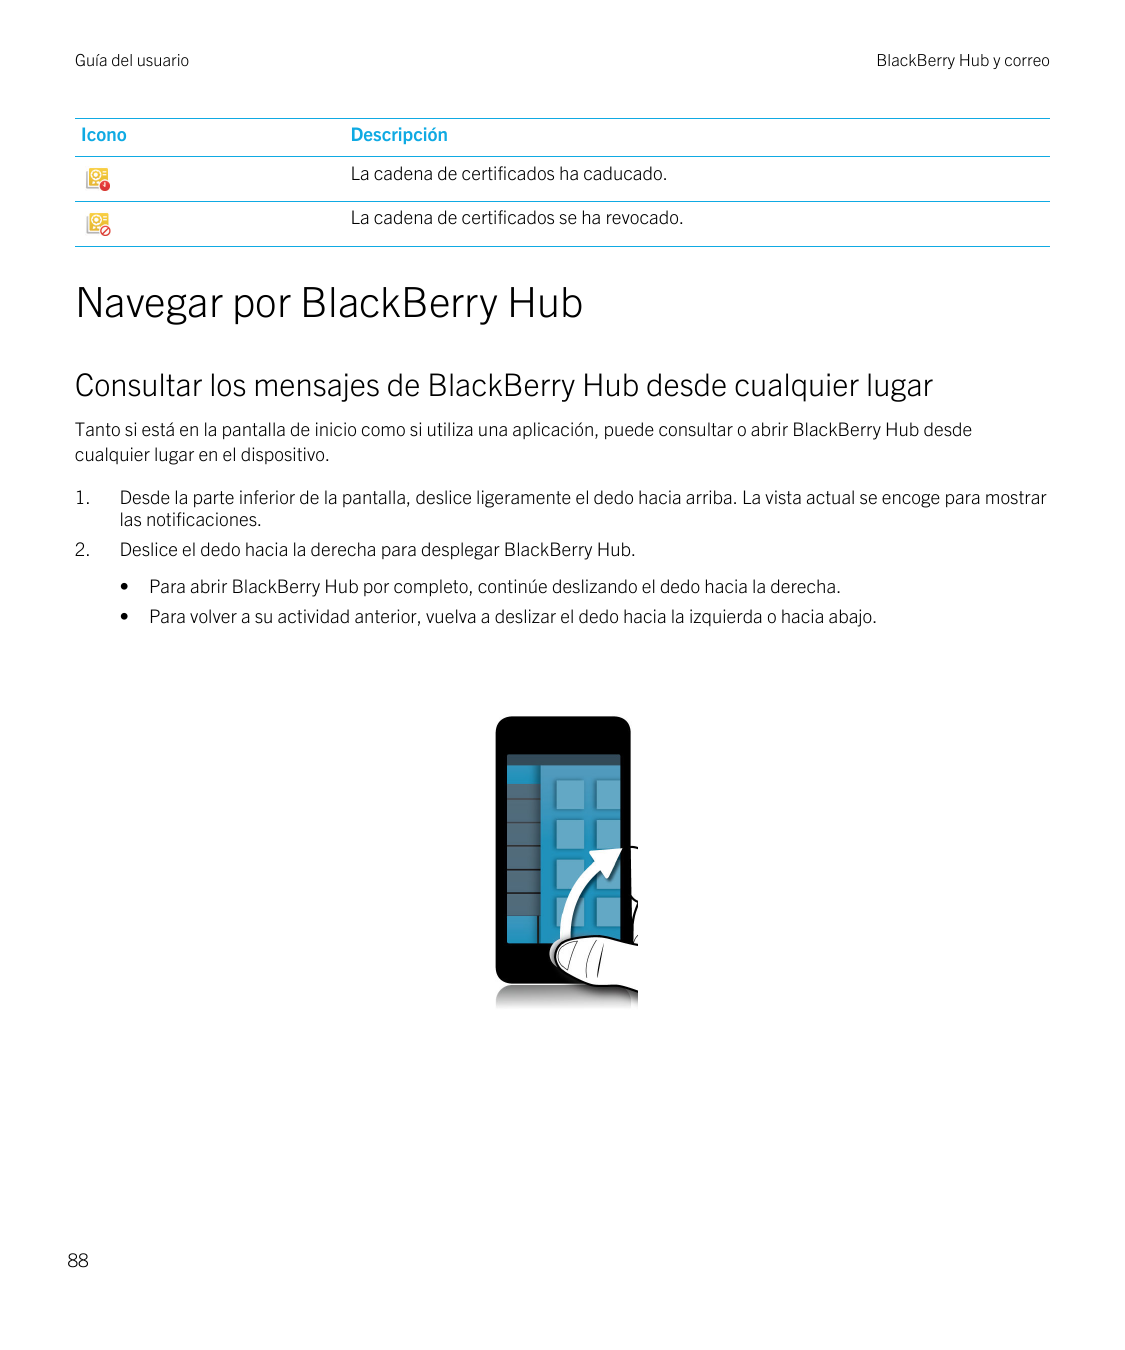 Guía del usuarioIconoBlackBerry Hub y correoDescripciónLa cadena de certificados ha caducado.La cadena de certificados se ha rev